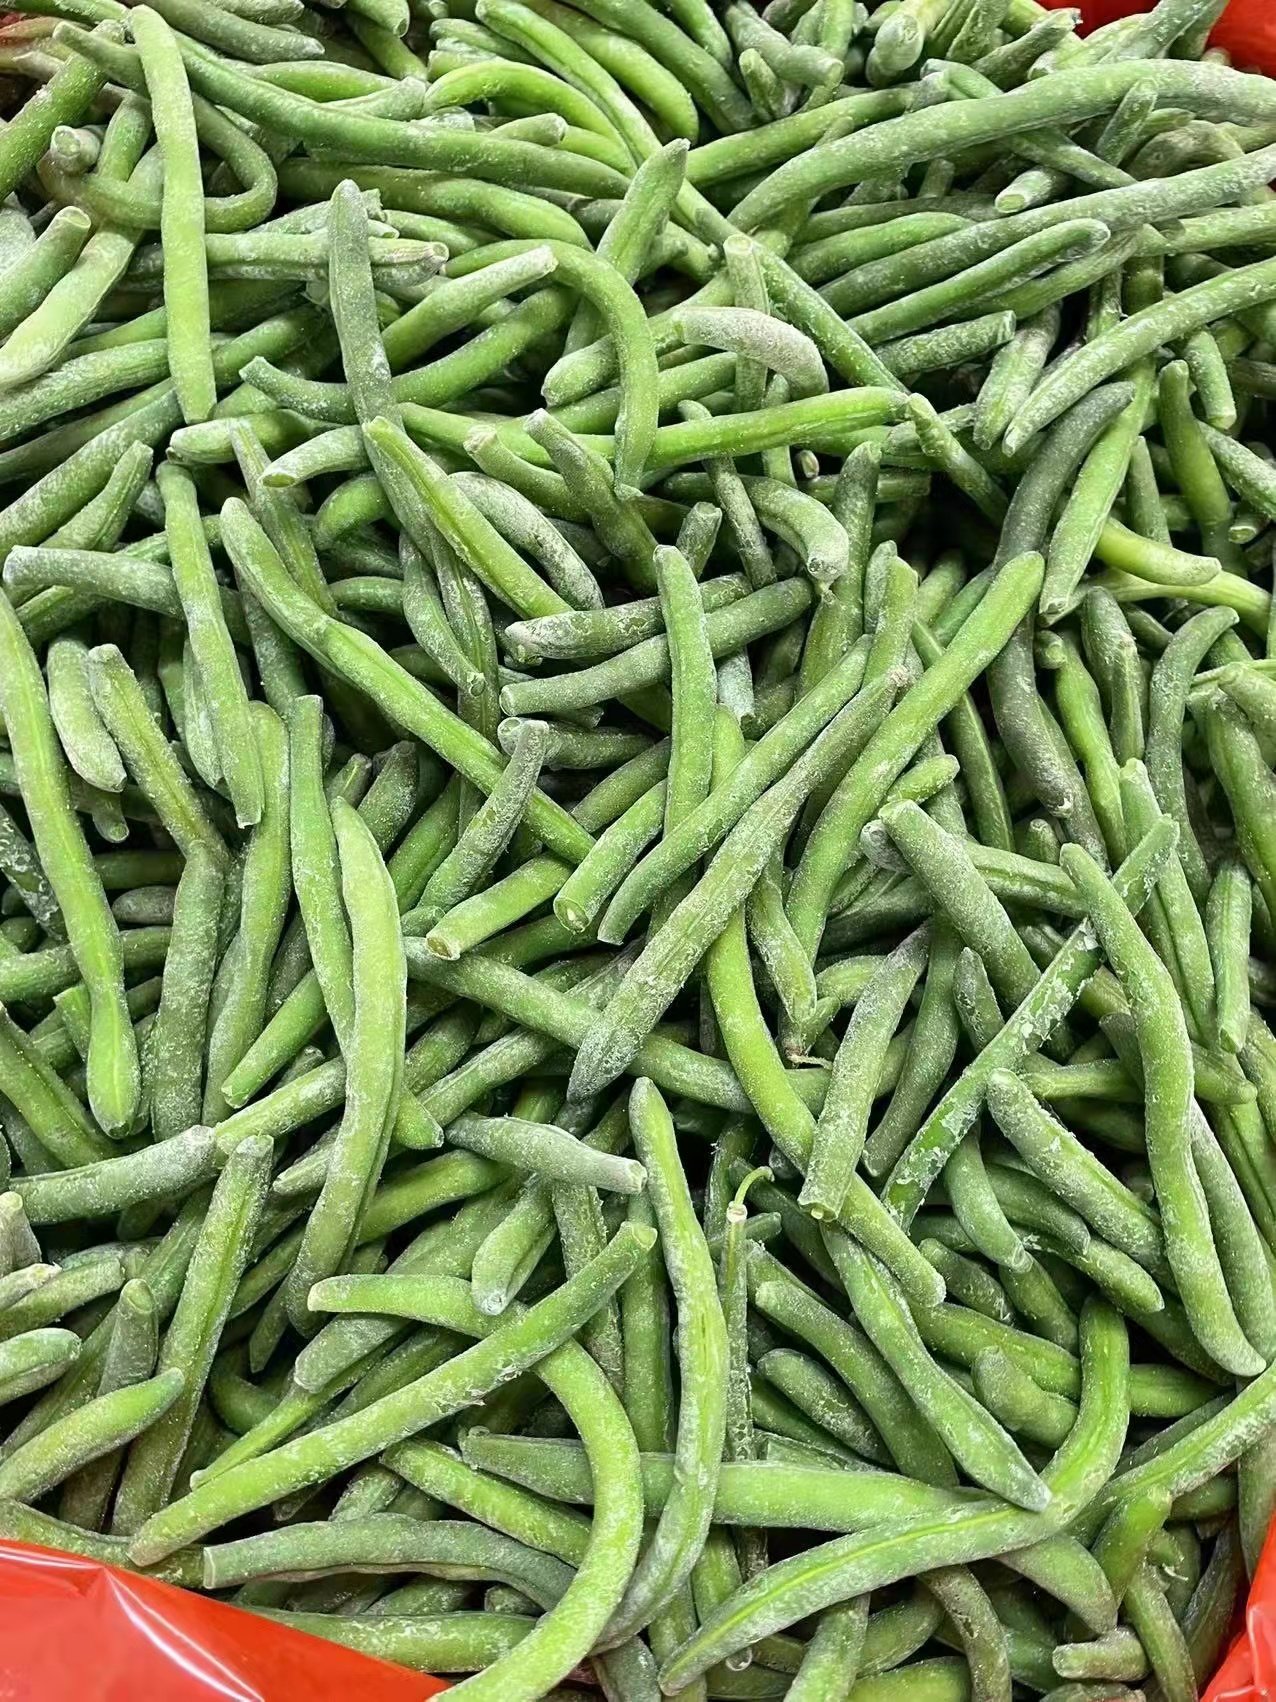 Frozen Green Bean Cut / Whole